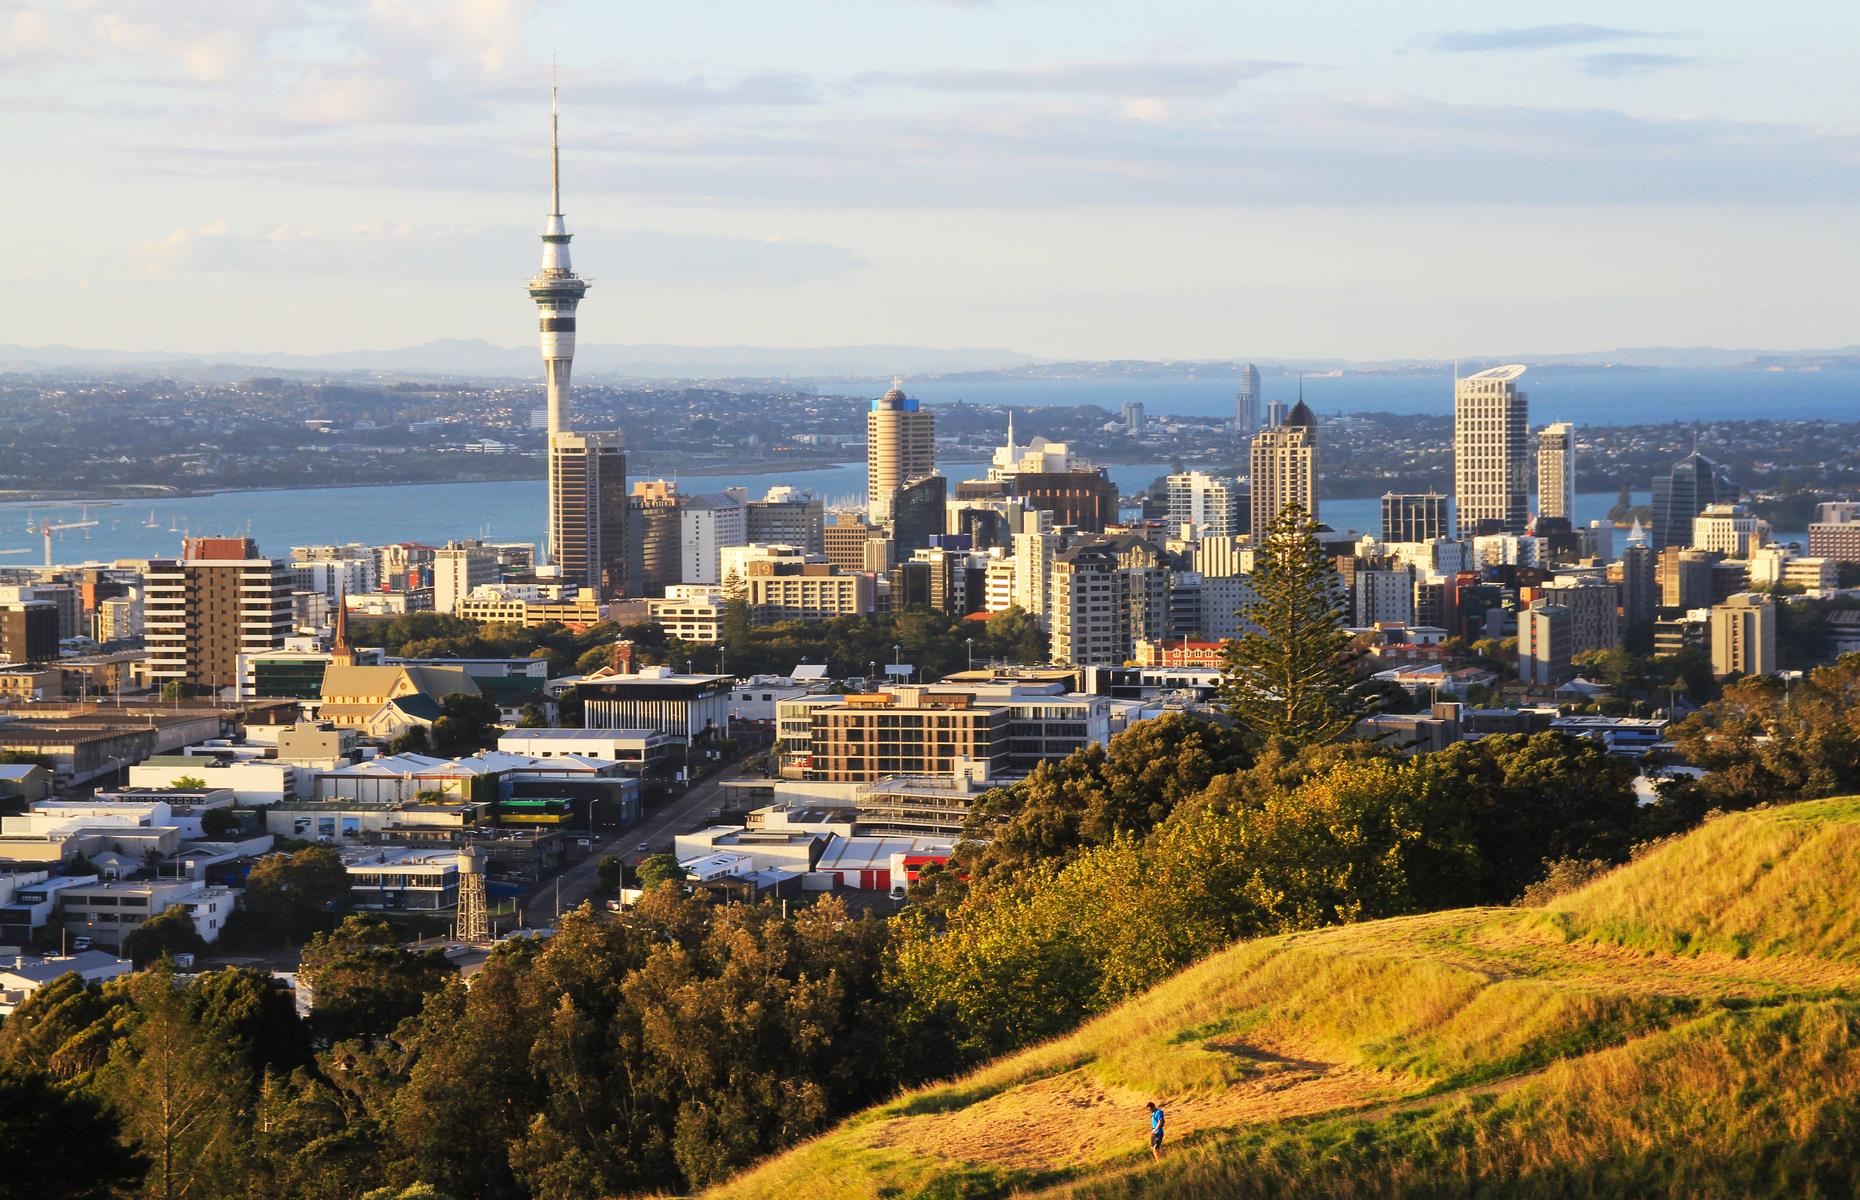 7. New Zealand – Median wealth: $116,437